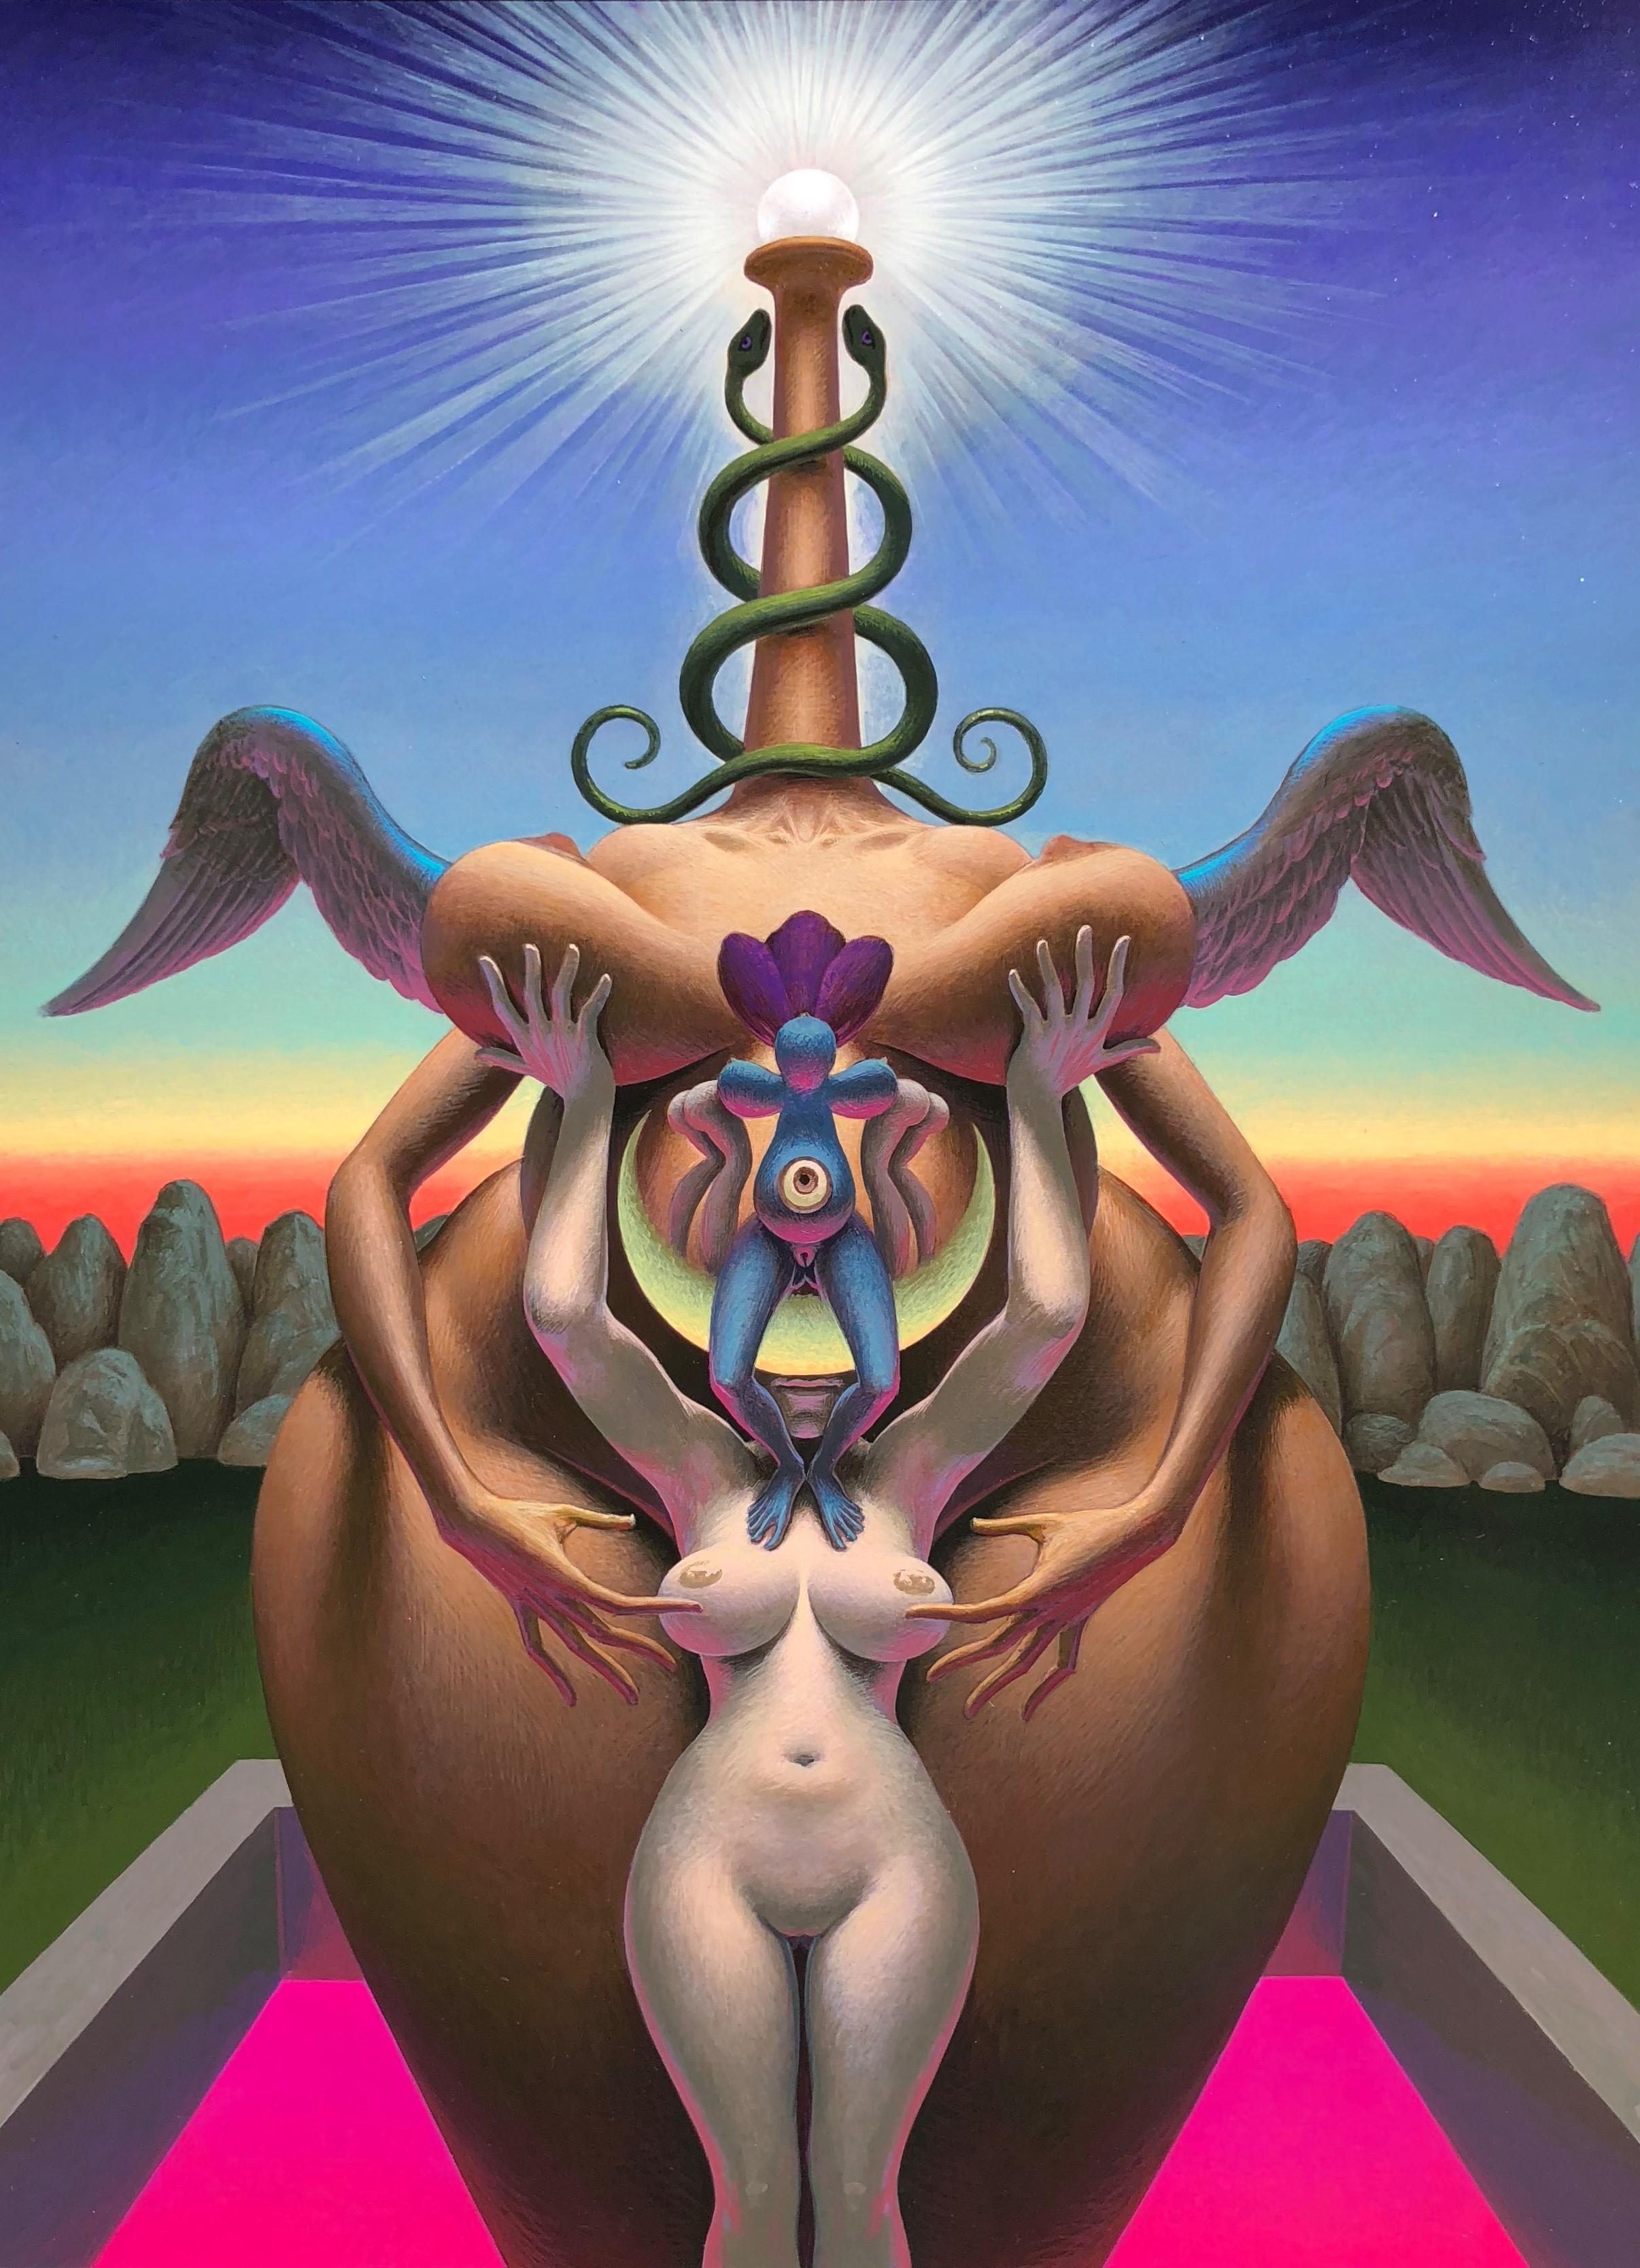 Oliver Hazard Benson Nude Painting – Rückkehr der Göttin - Originalgemälde einer surrealen, symbolischen Göttinfigur